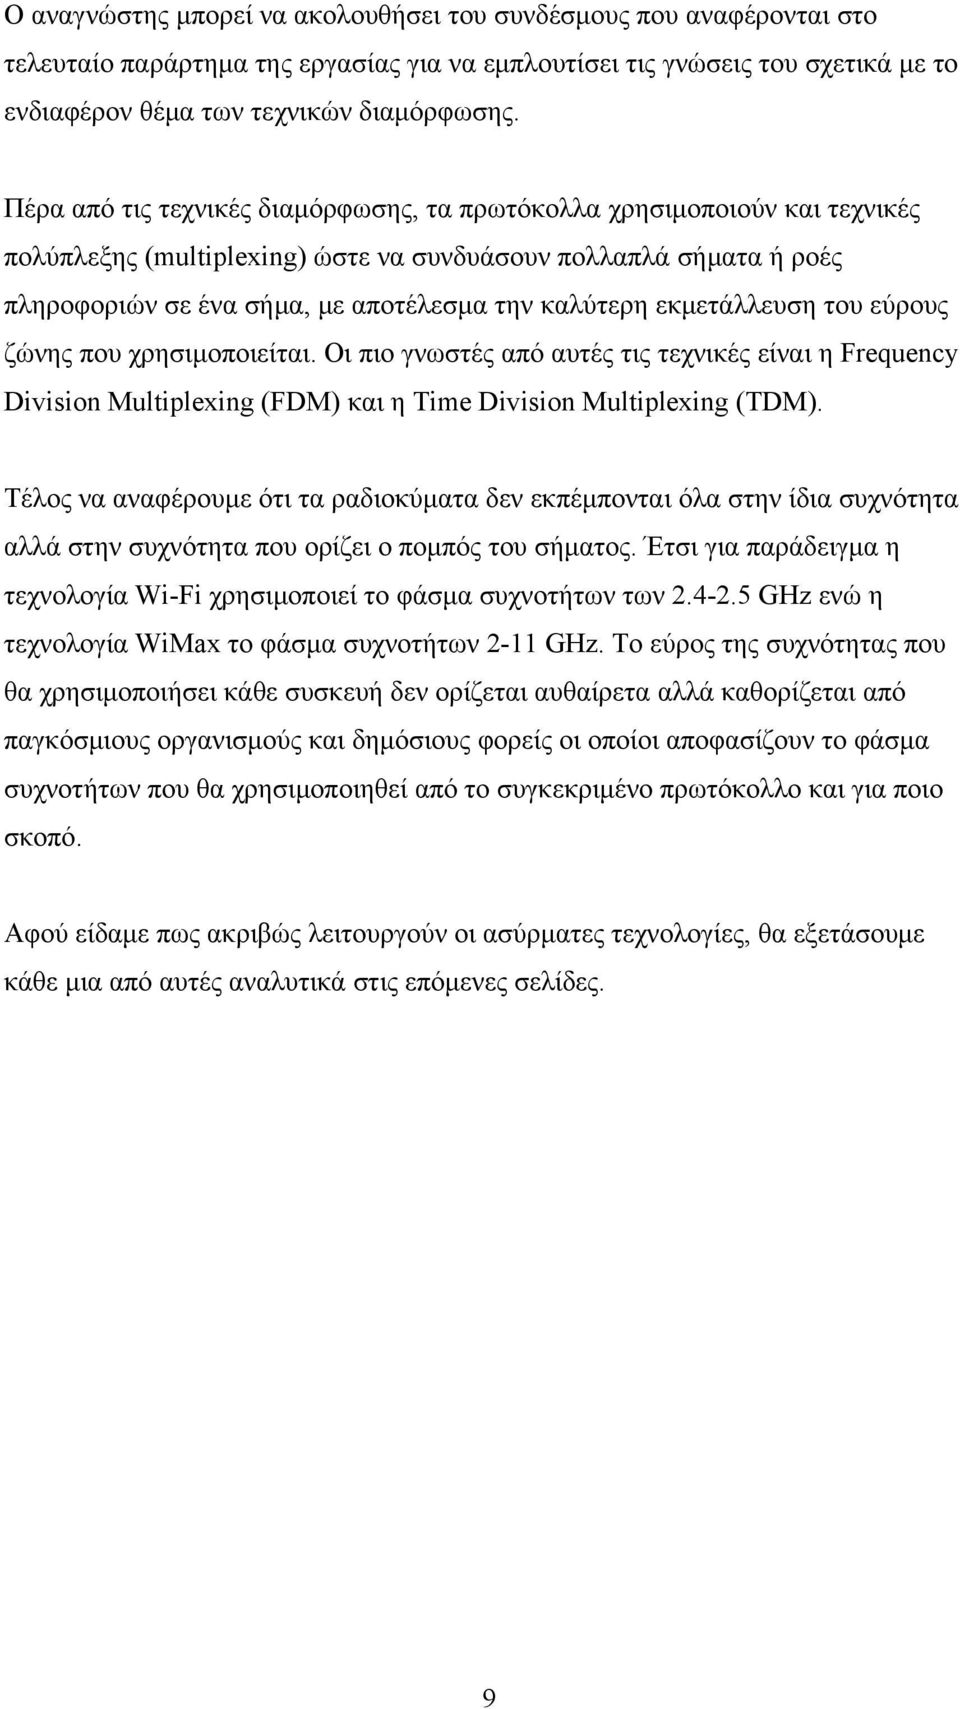 εκμετάλλευση του εύρους ζώνης που χρησιμοποιείται. Οι πιο γνωστές από αυτές τις τεχνικές είναι η Frequency Division Multiplexing (FDM) και η Time Division Multiplexing (TDM).